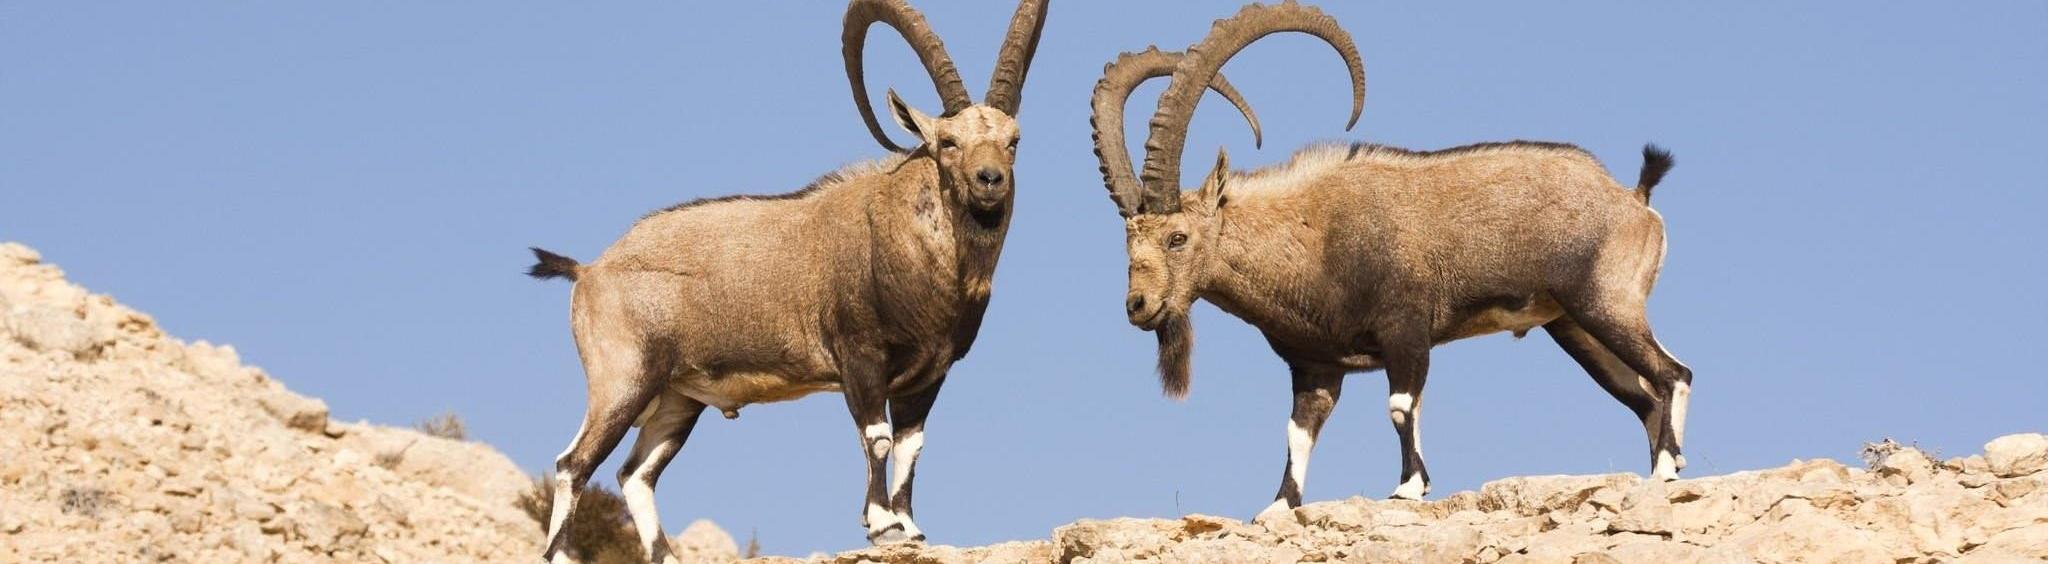 Ученые собирают деньги на экспедицию по изучению безоарового козла 